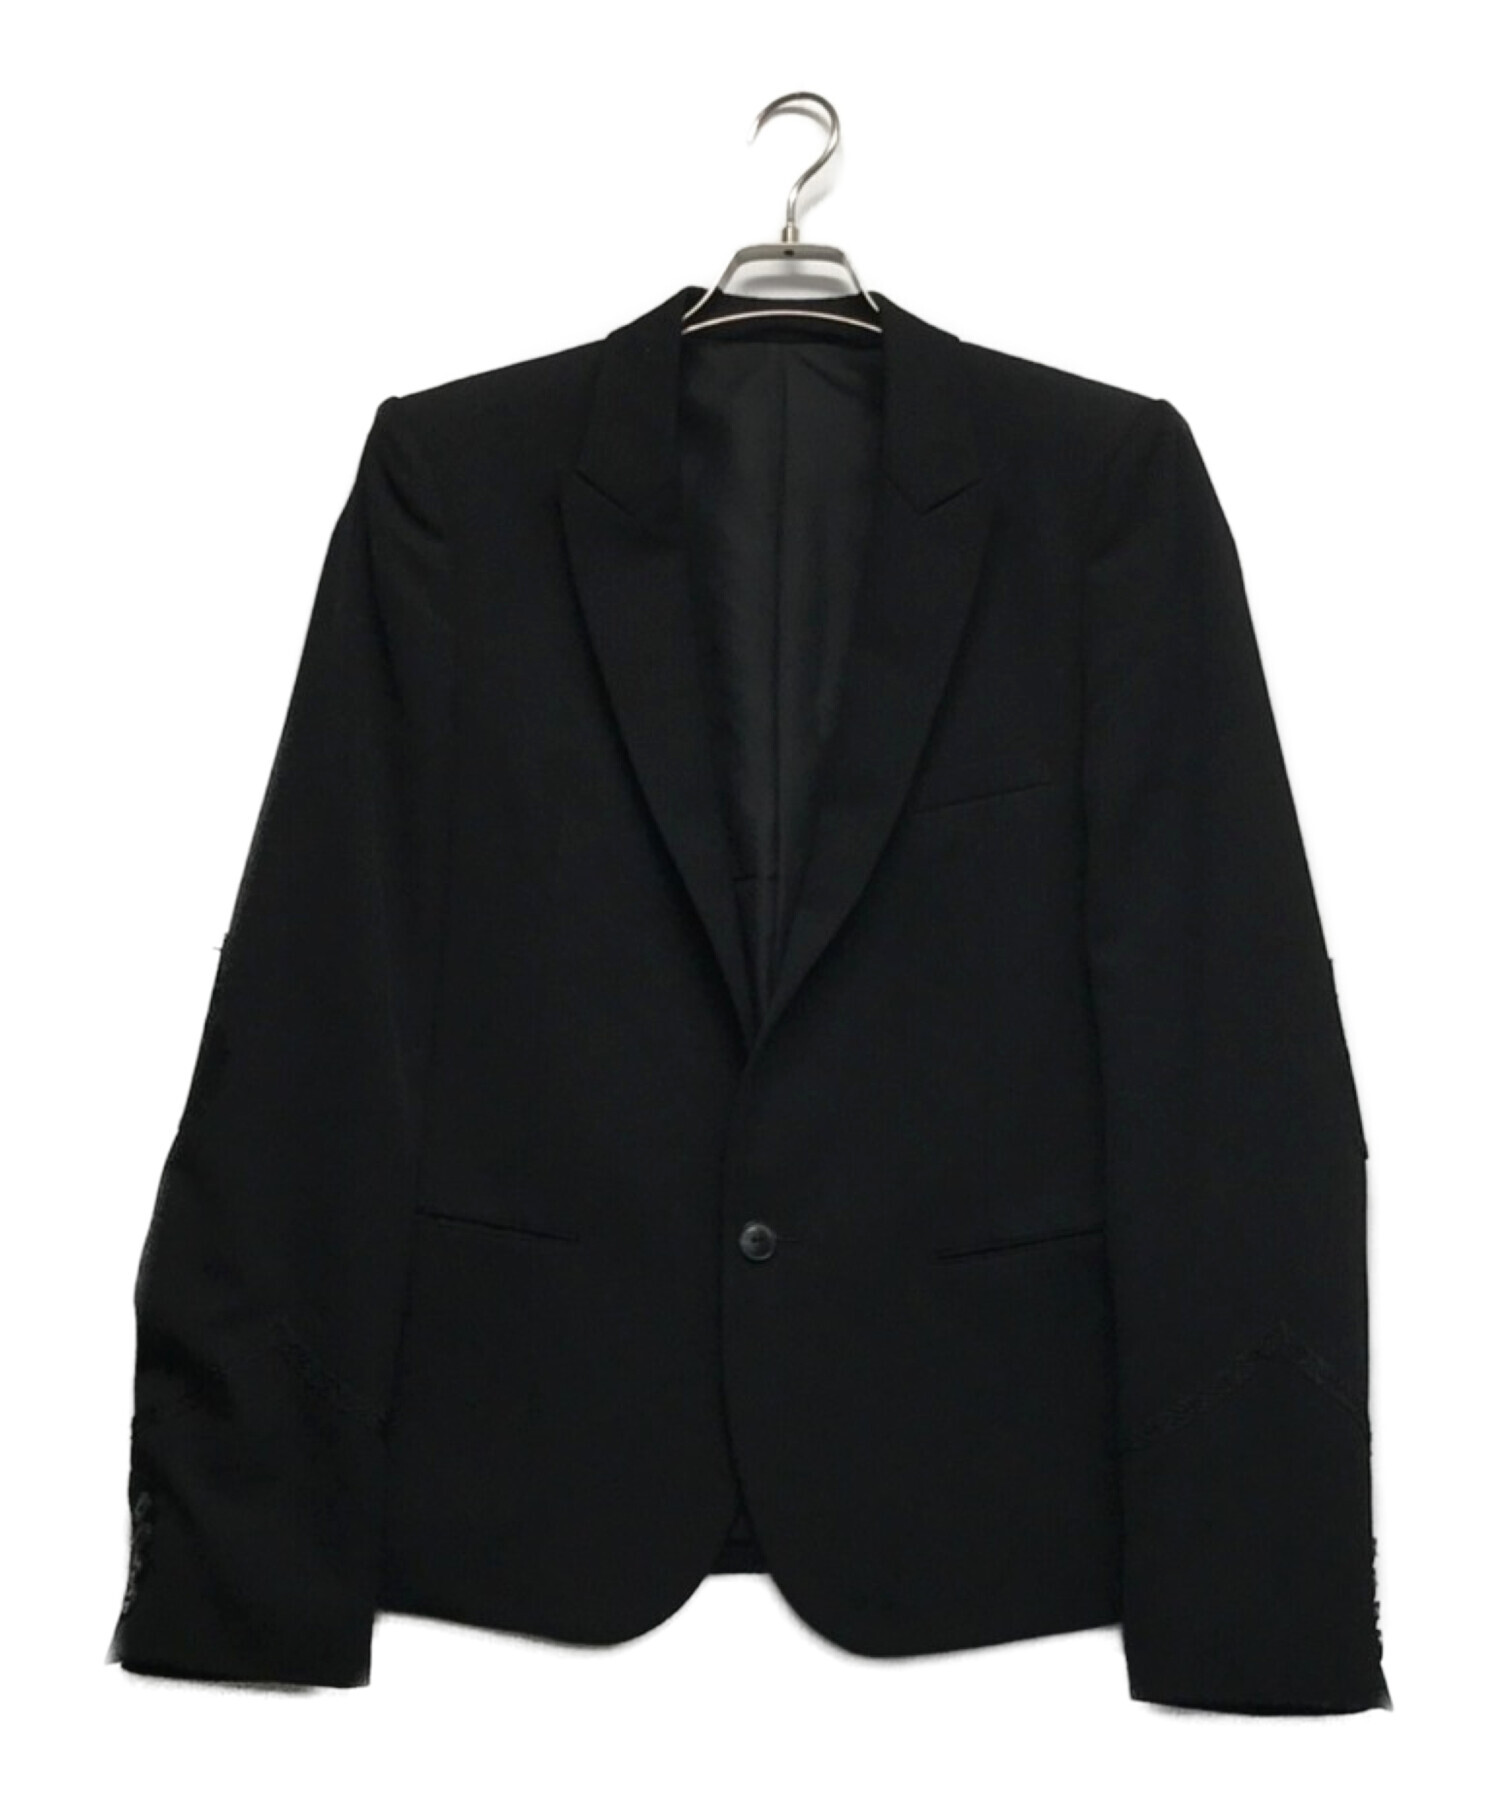 04～05年オリジナル ナンバーナイン テーラードジャケット ブラック 黒